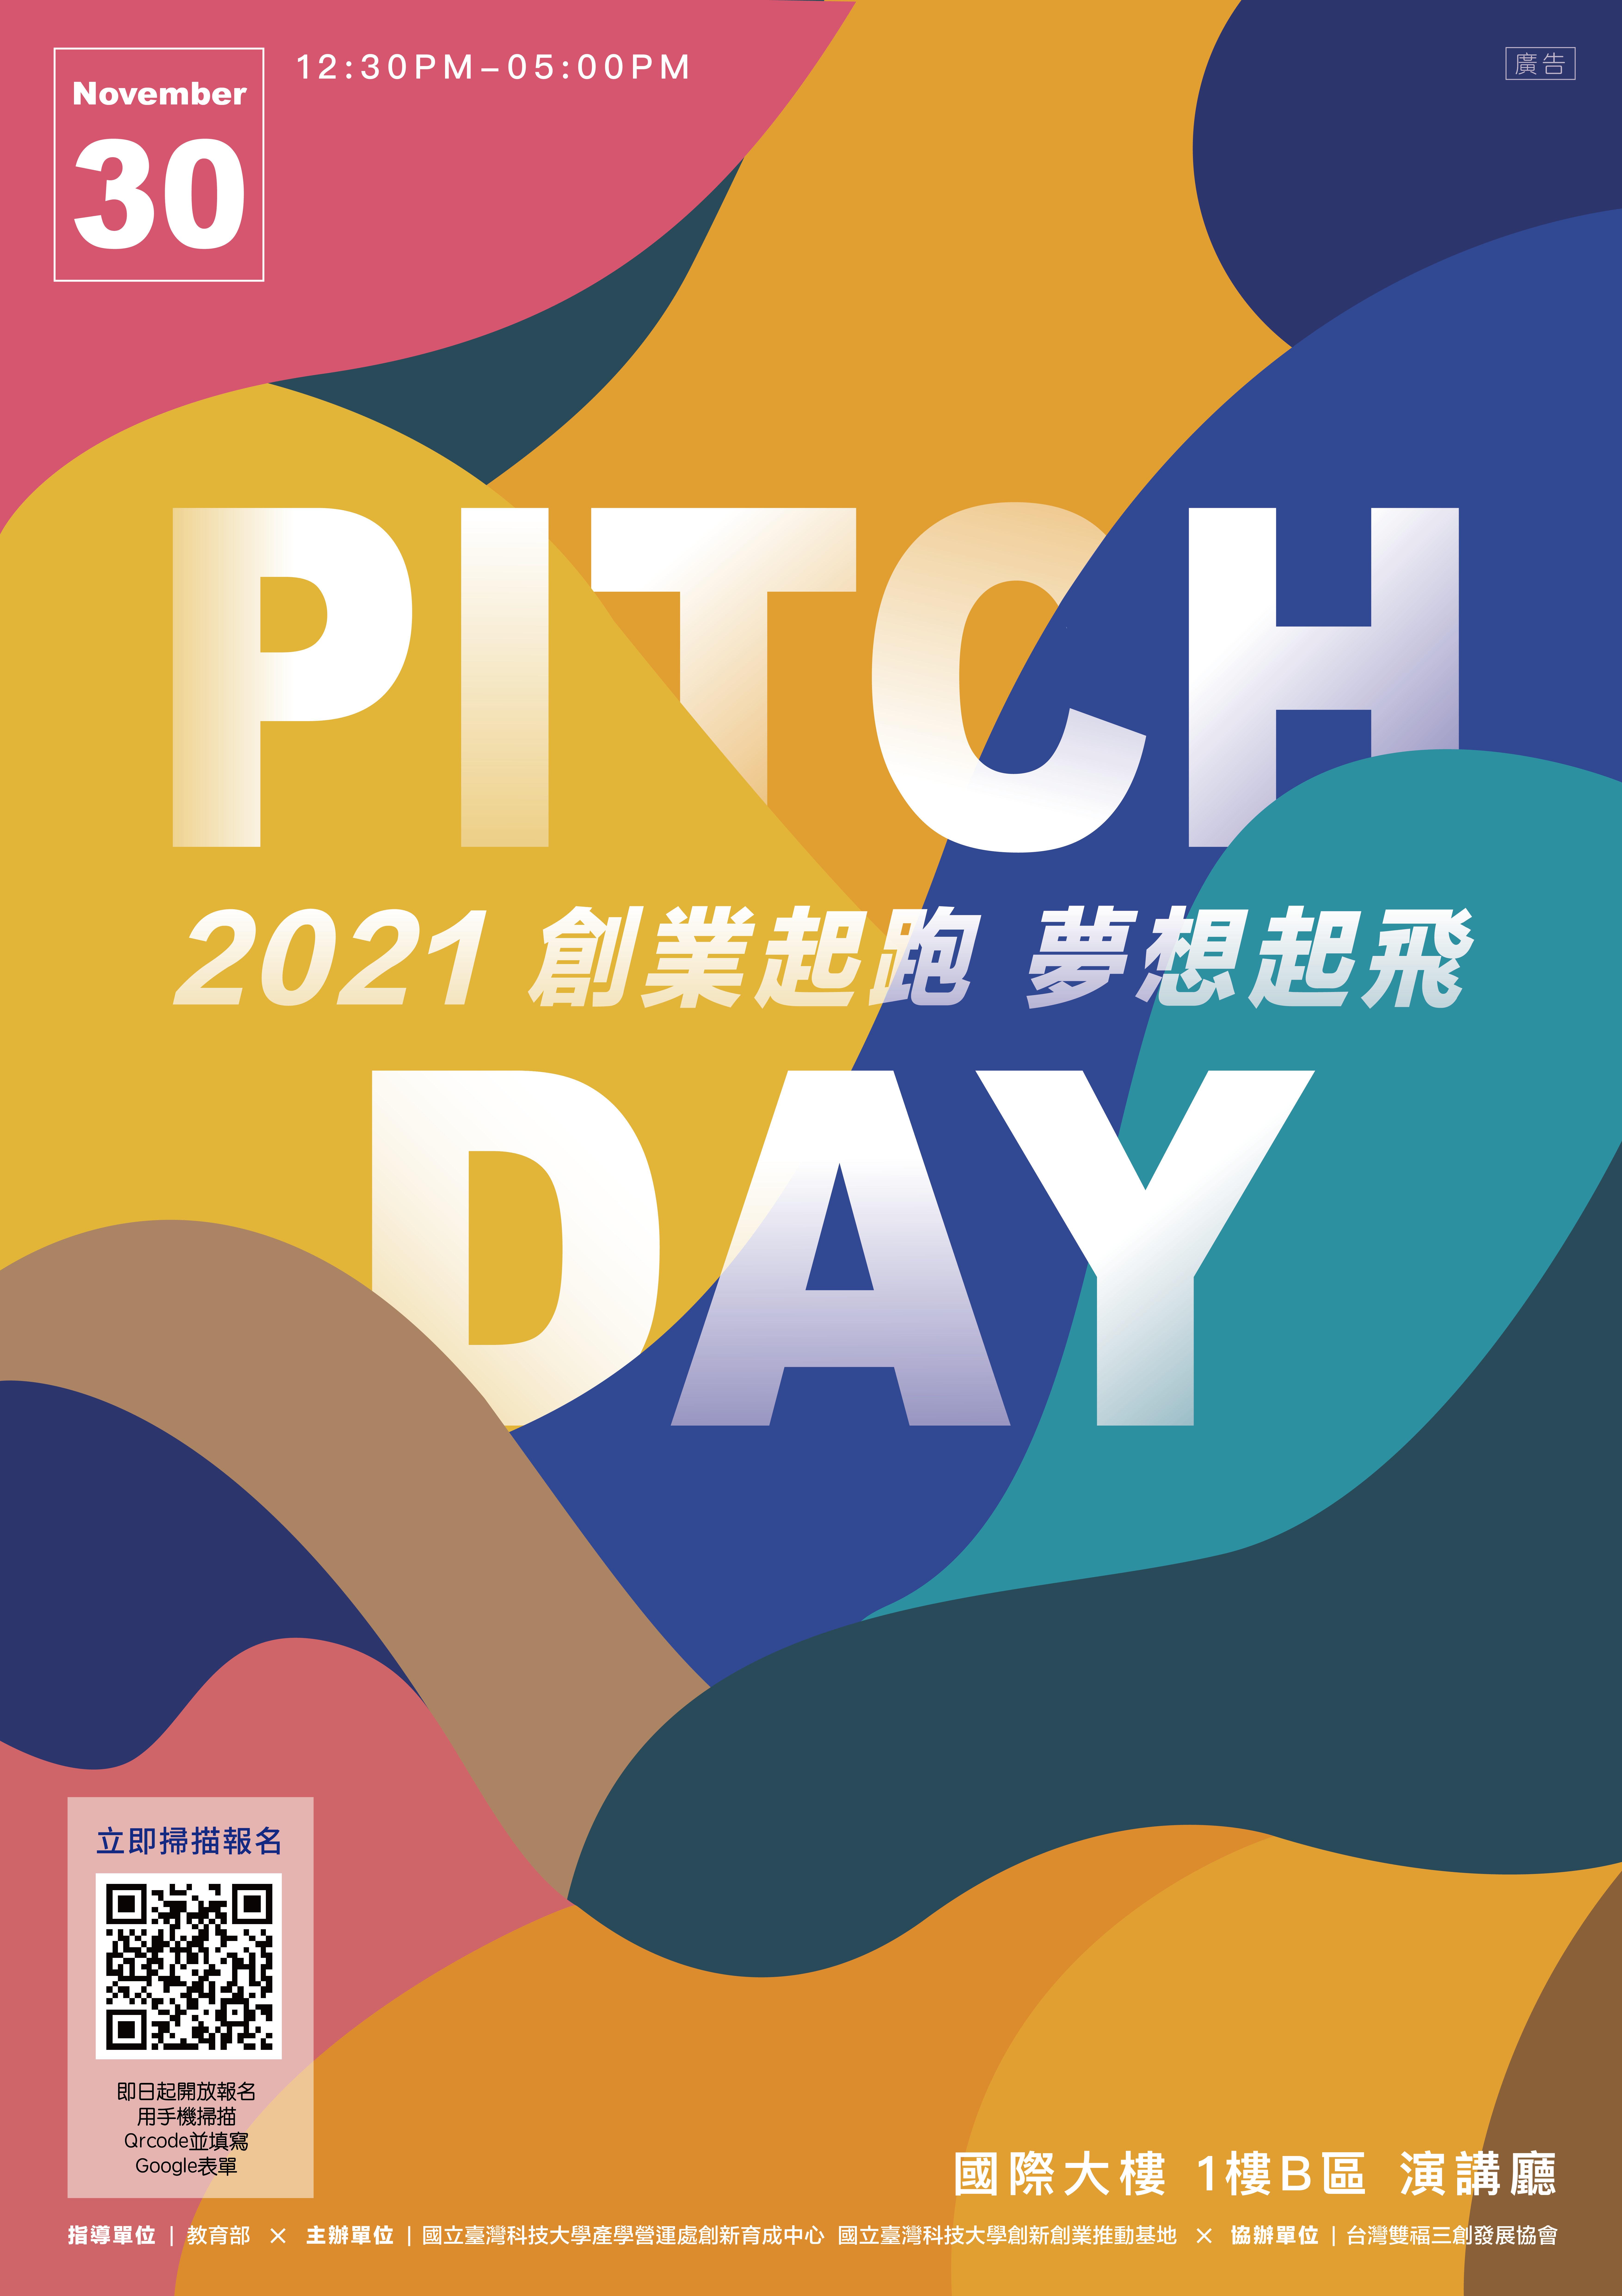 2021臺科大《創業起跑 夢想起飛》Pitch Day邀請您報名參加